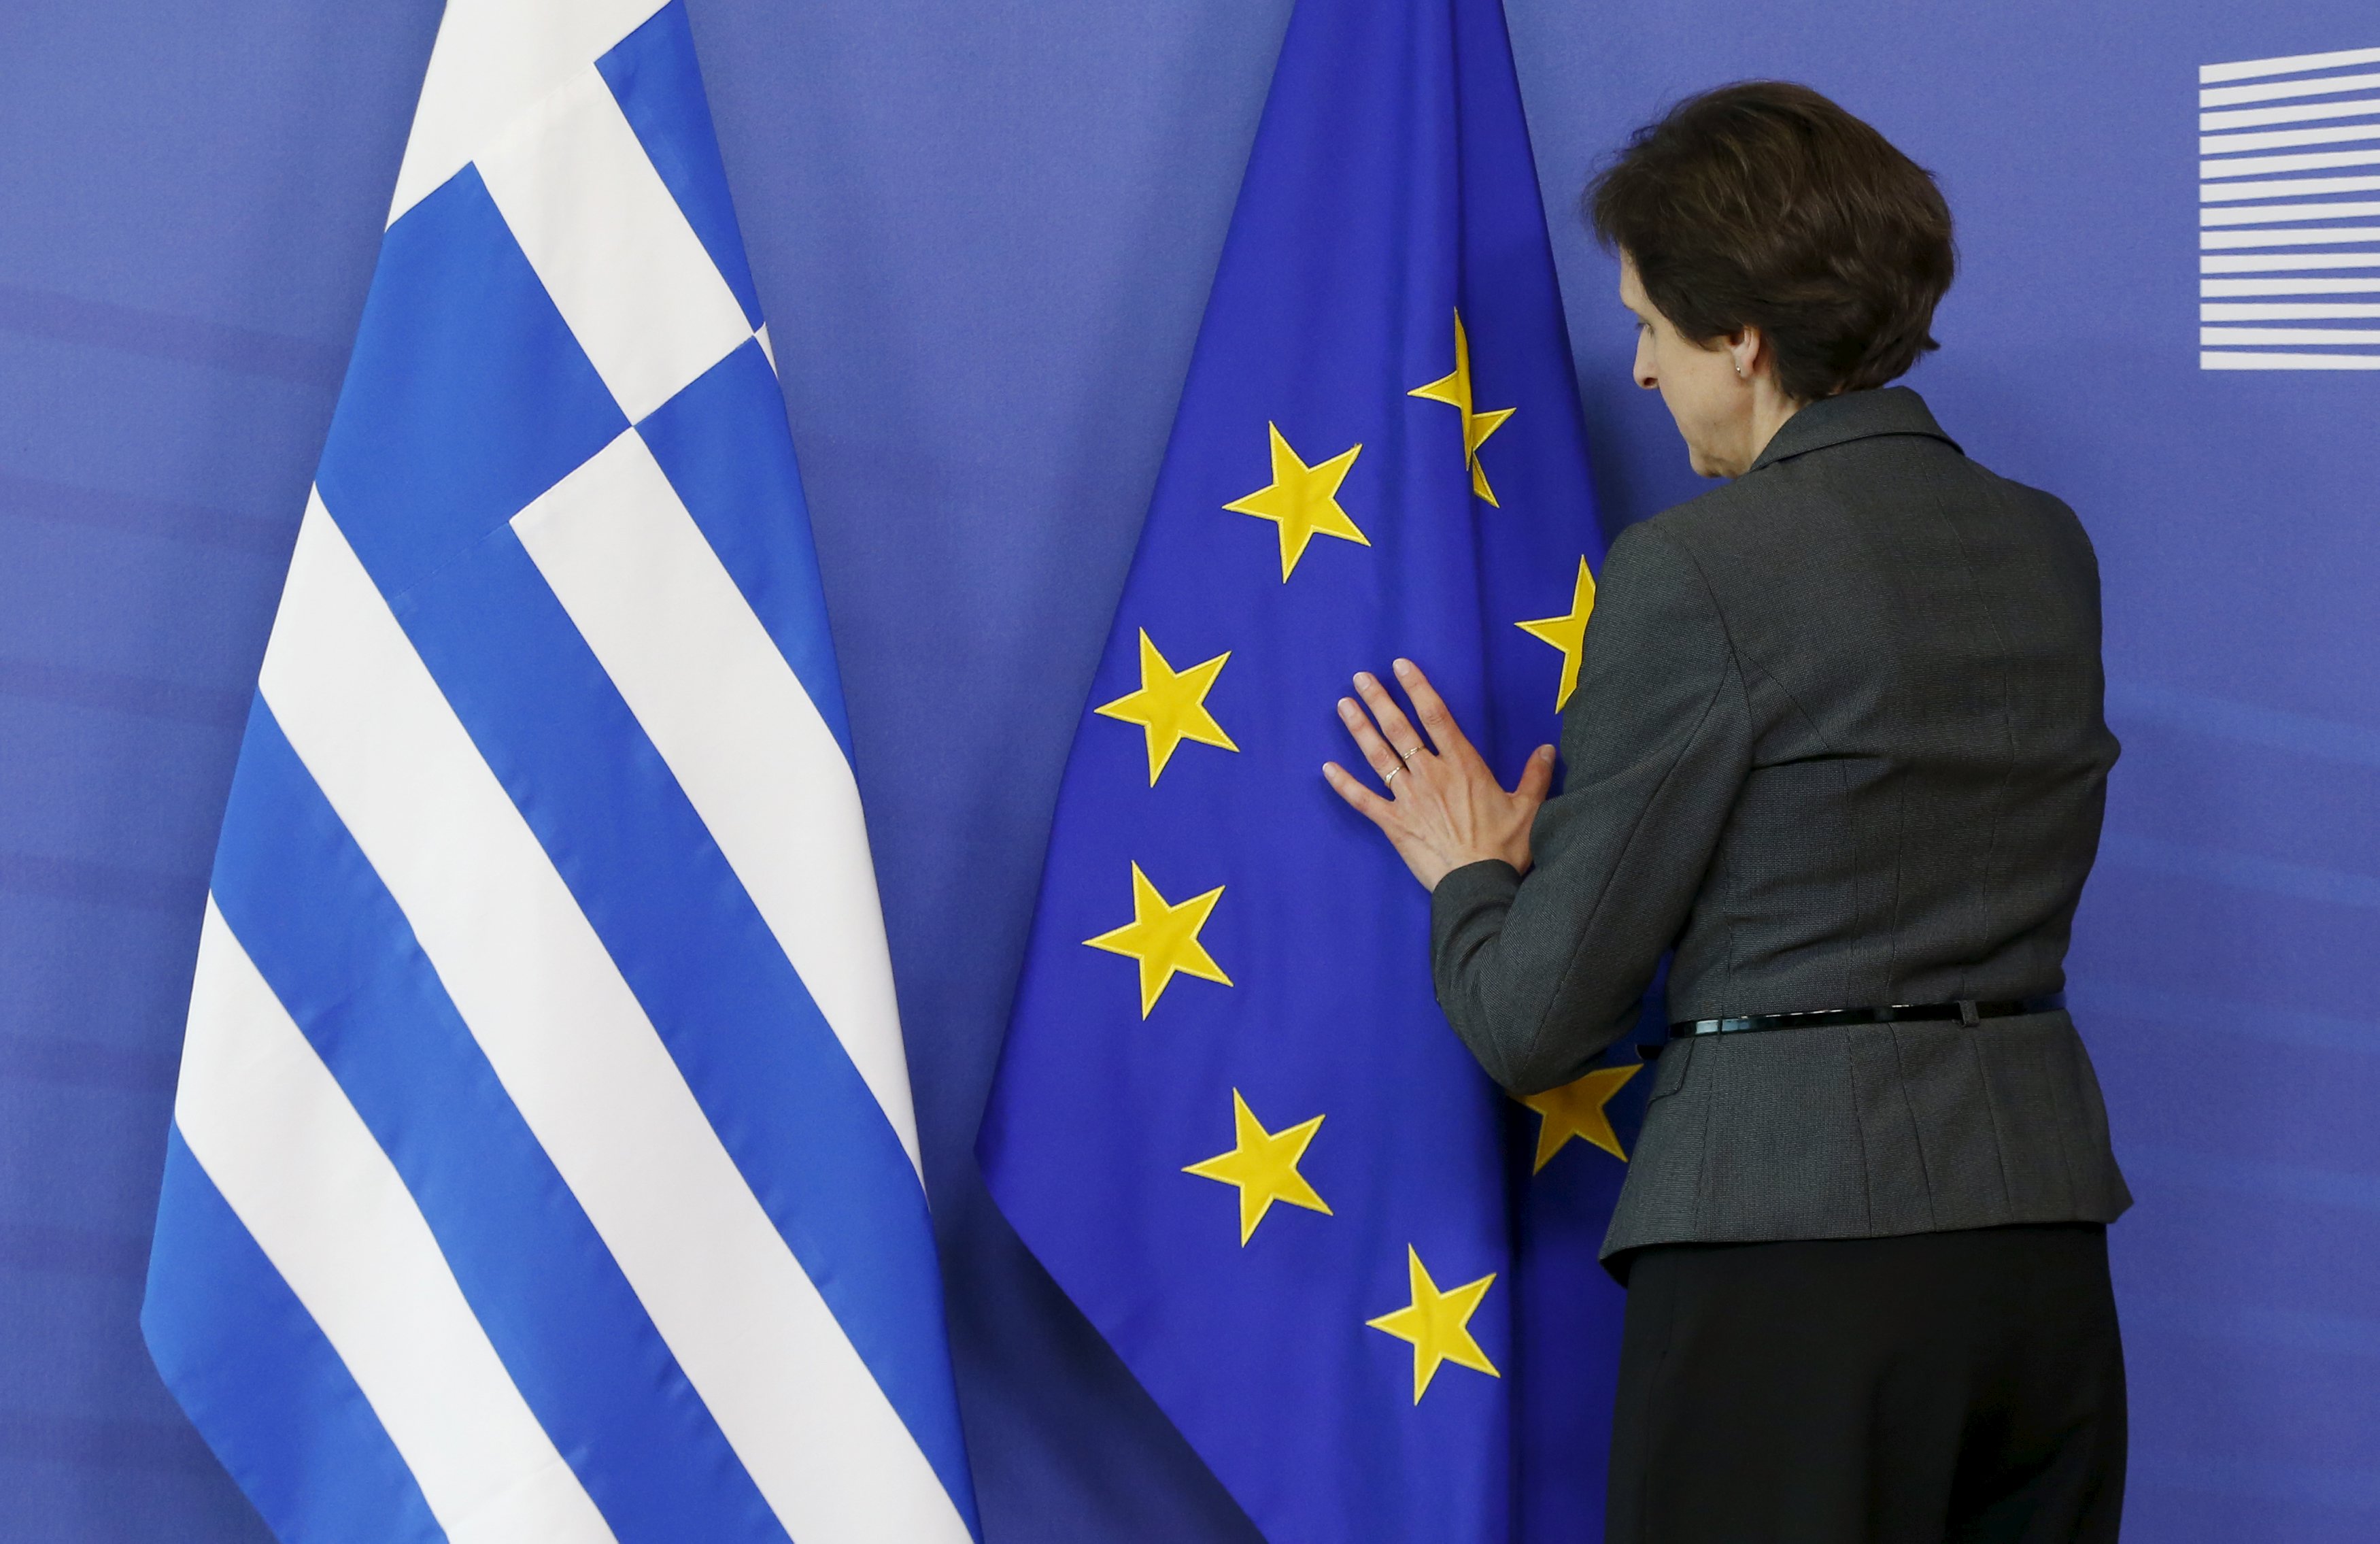 Ιταλικά ΜΜΕ: Η Ελλάδα θα μπορούσε να επιστρέψει αυτόνομα στις αγορές